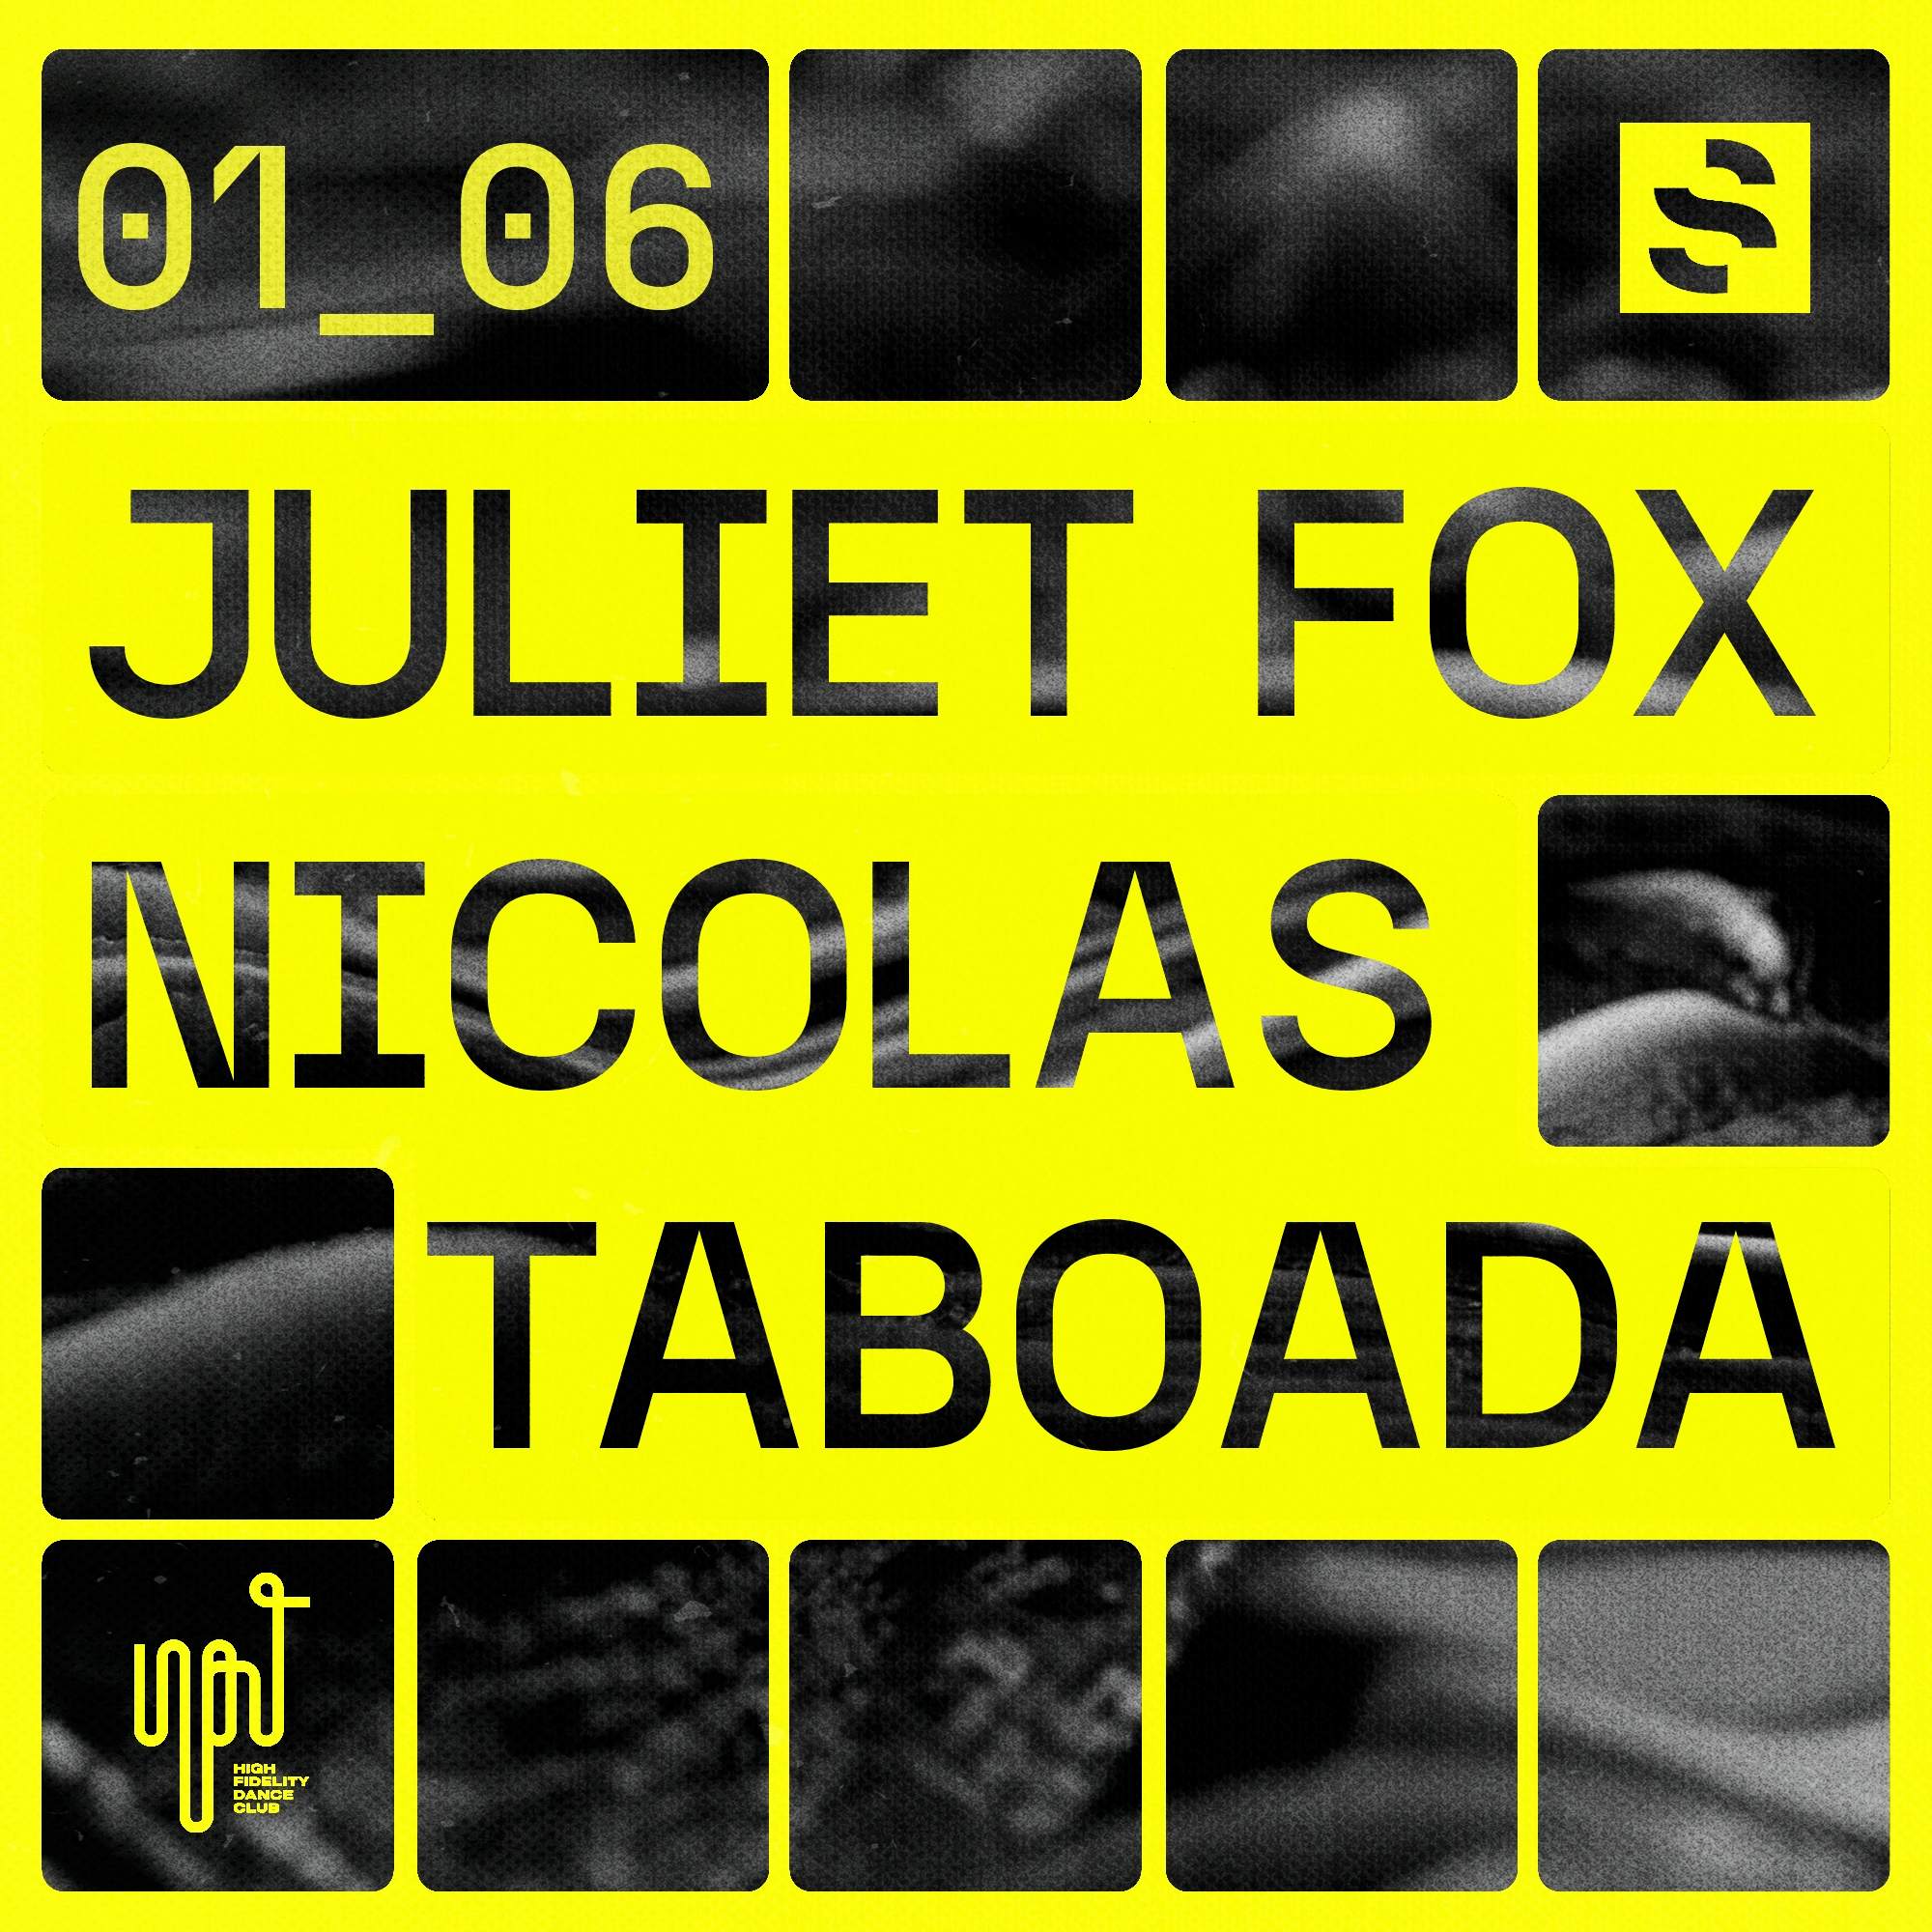 SWING pres Juliet Fox & NICOLAS TABOADA - フライヤー表